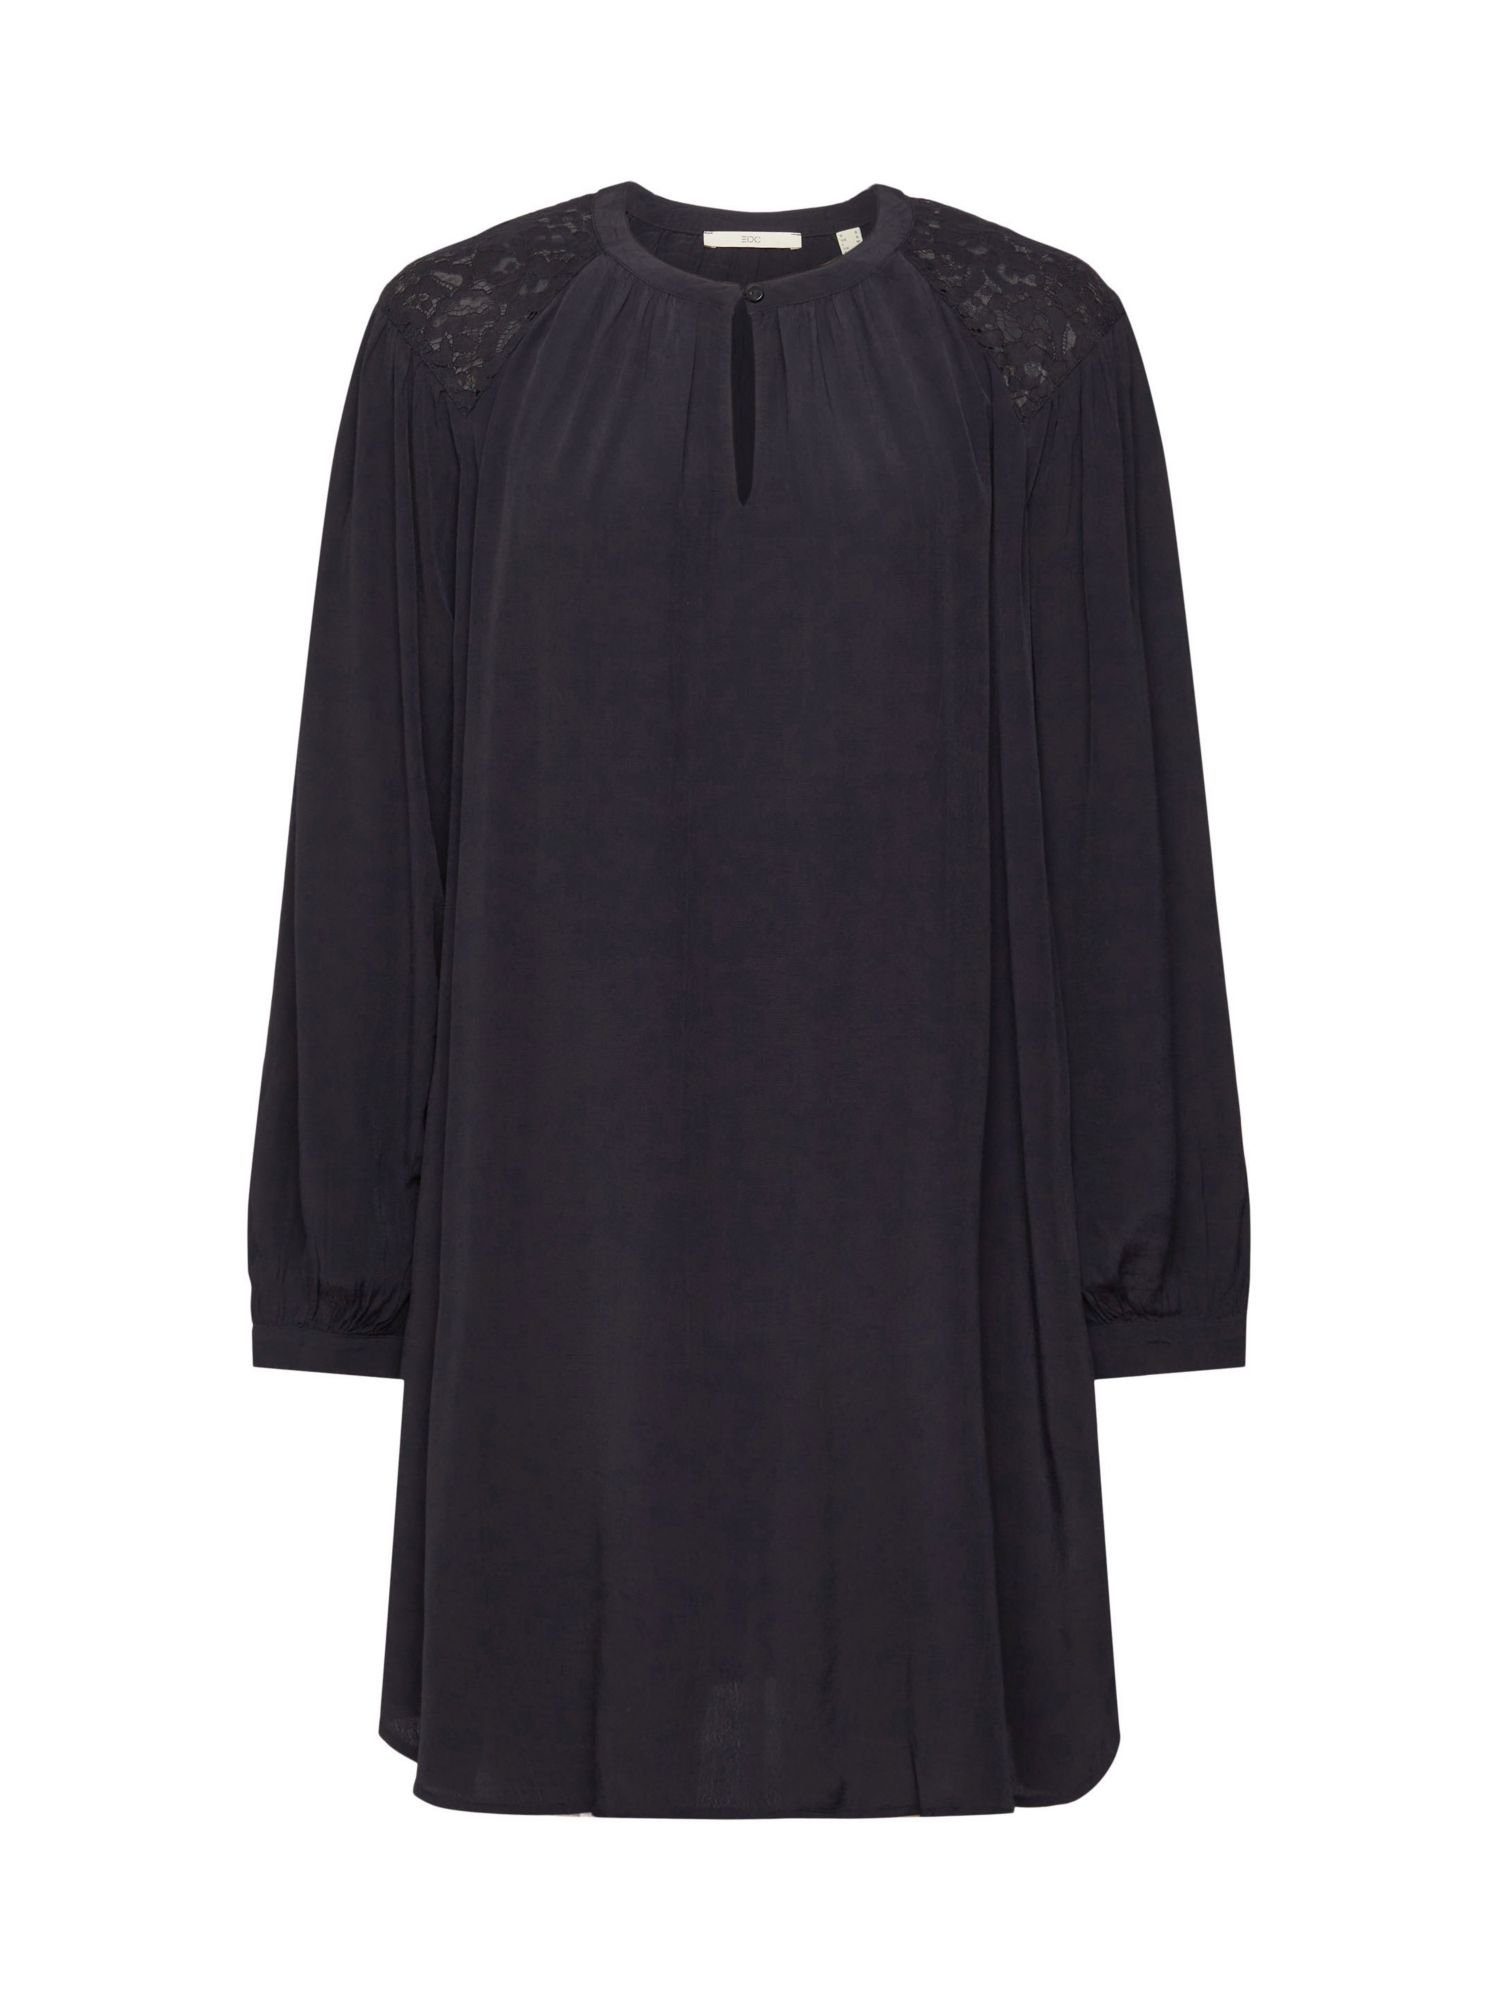 Esprit Spitzendetails BLACK edc by Minikleid Kleid mit